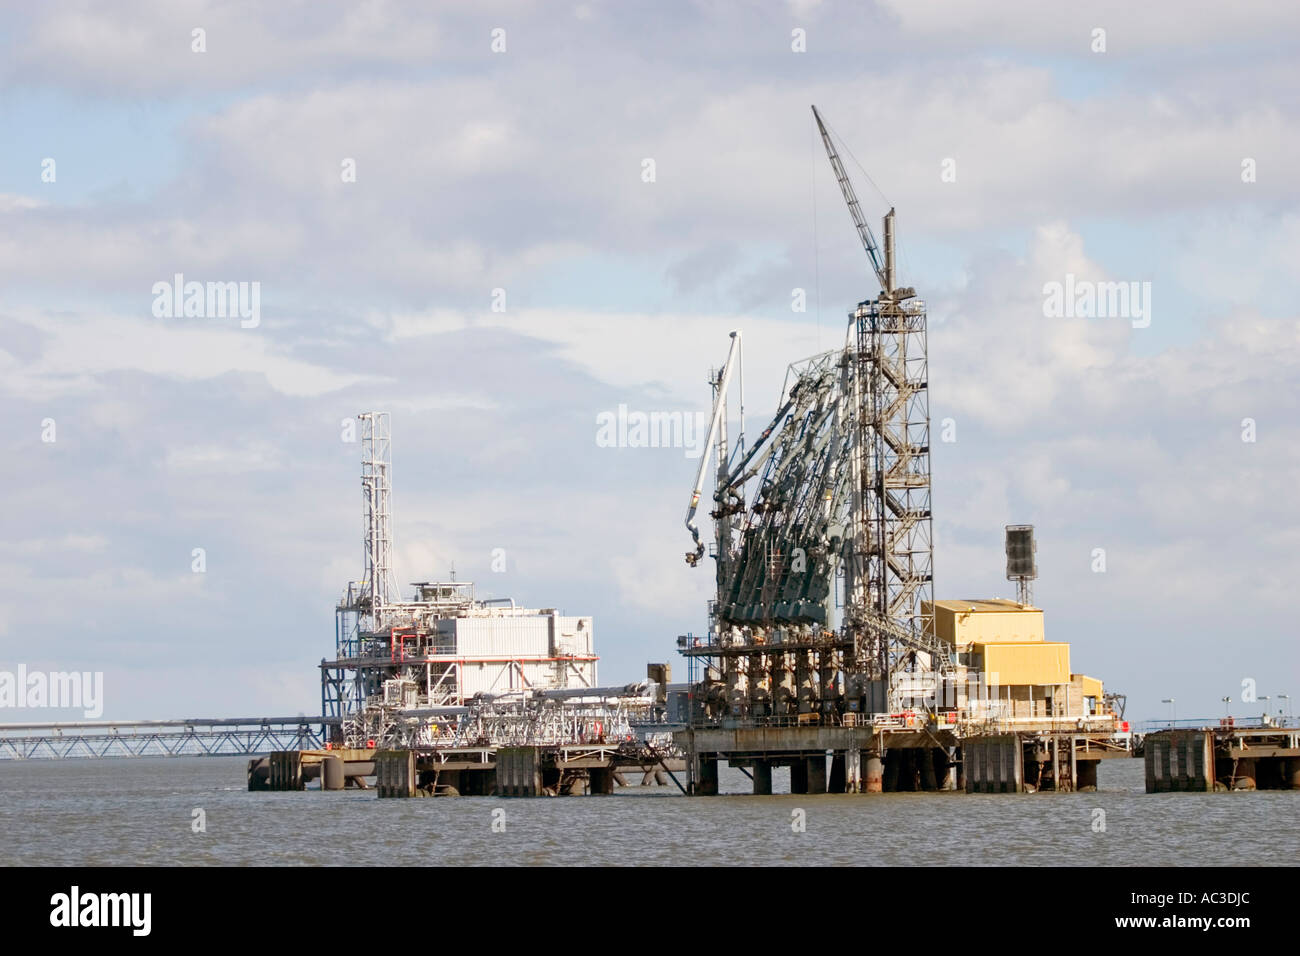 Wiedergabe Der Insel-Öl-Pumpe 3d Stockbild - Bild von erforschung